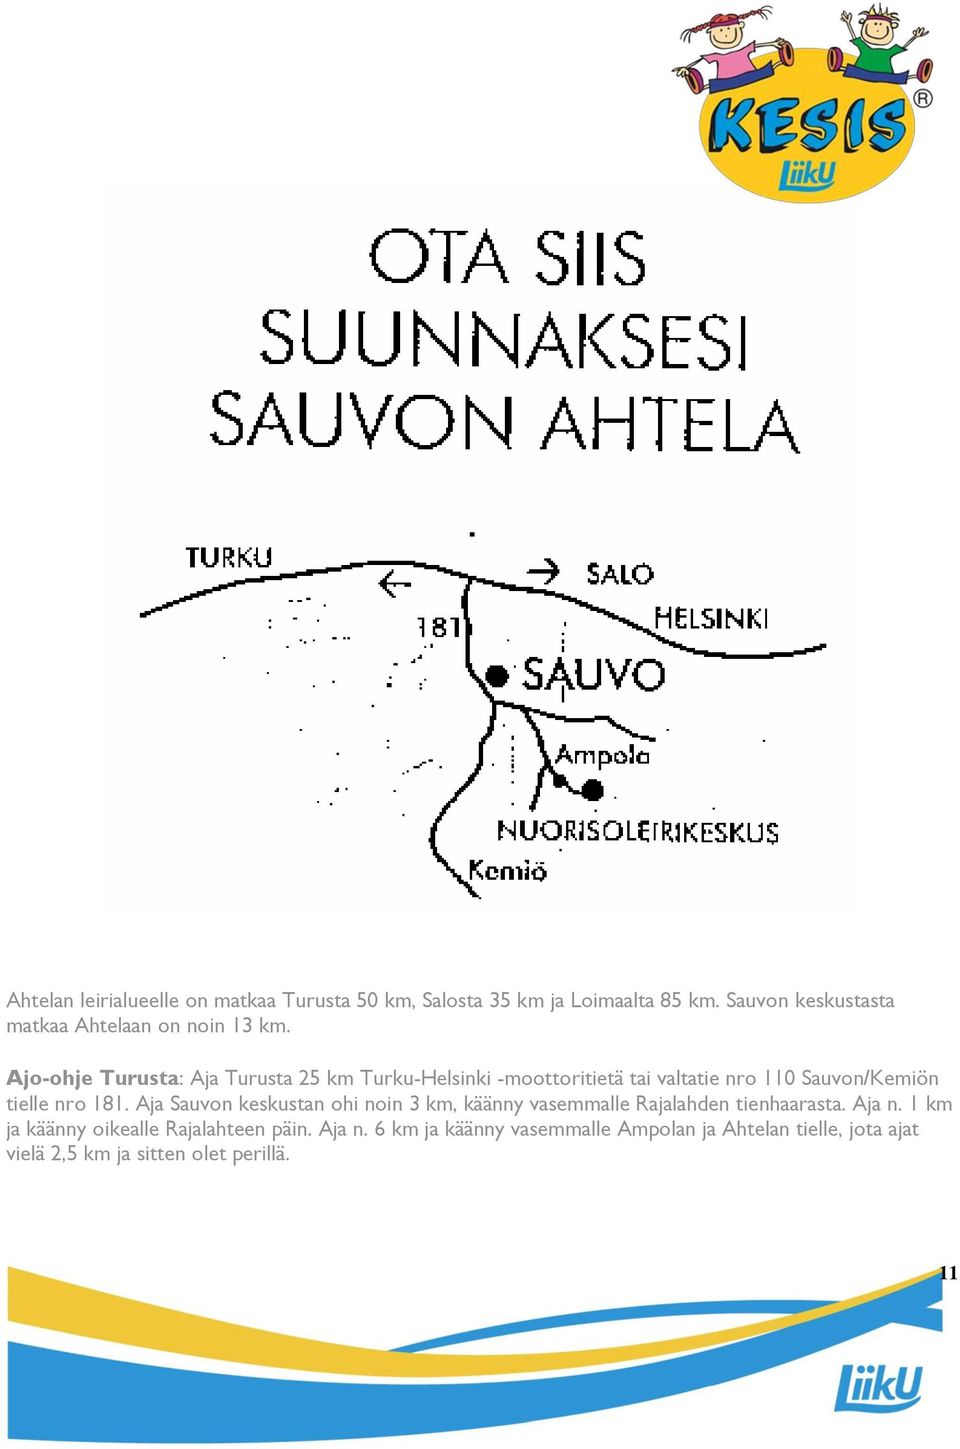 Ajo-ohje Turusta: Aja Turusta 25 km Turku-Helsinki -moottoritietä tai valtatie nro 110 Sauvon/Kemiön tielle nro 181.